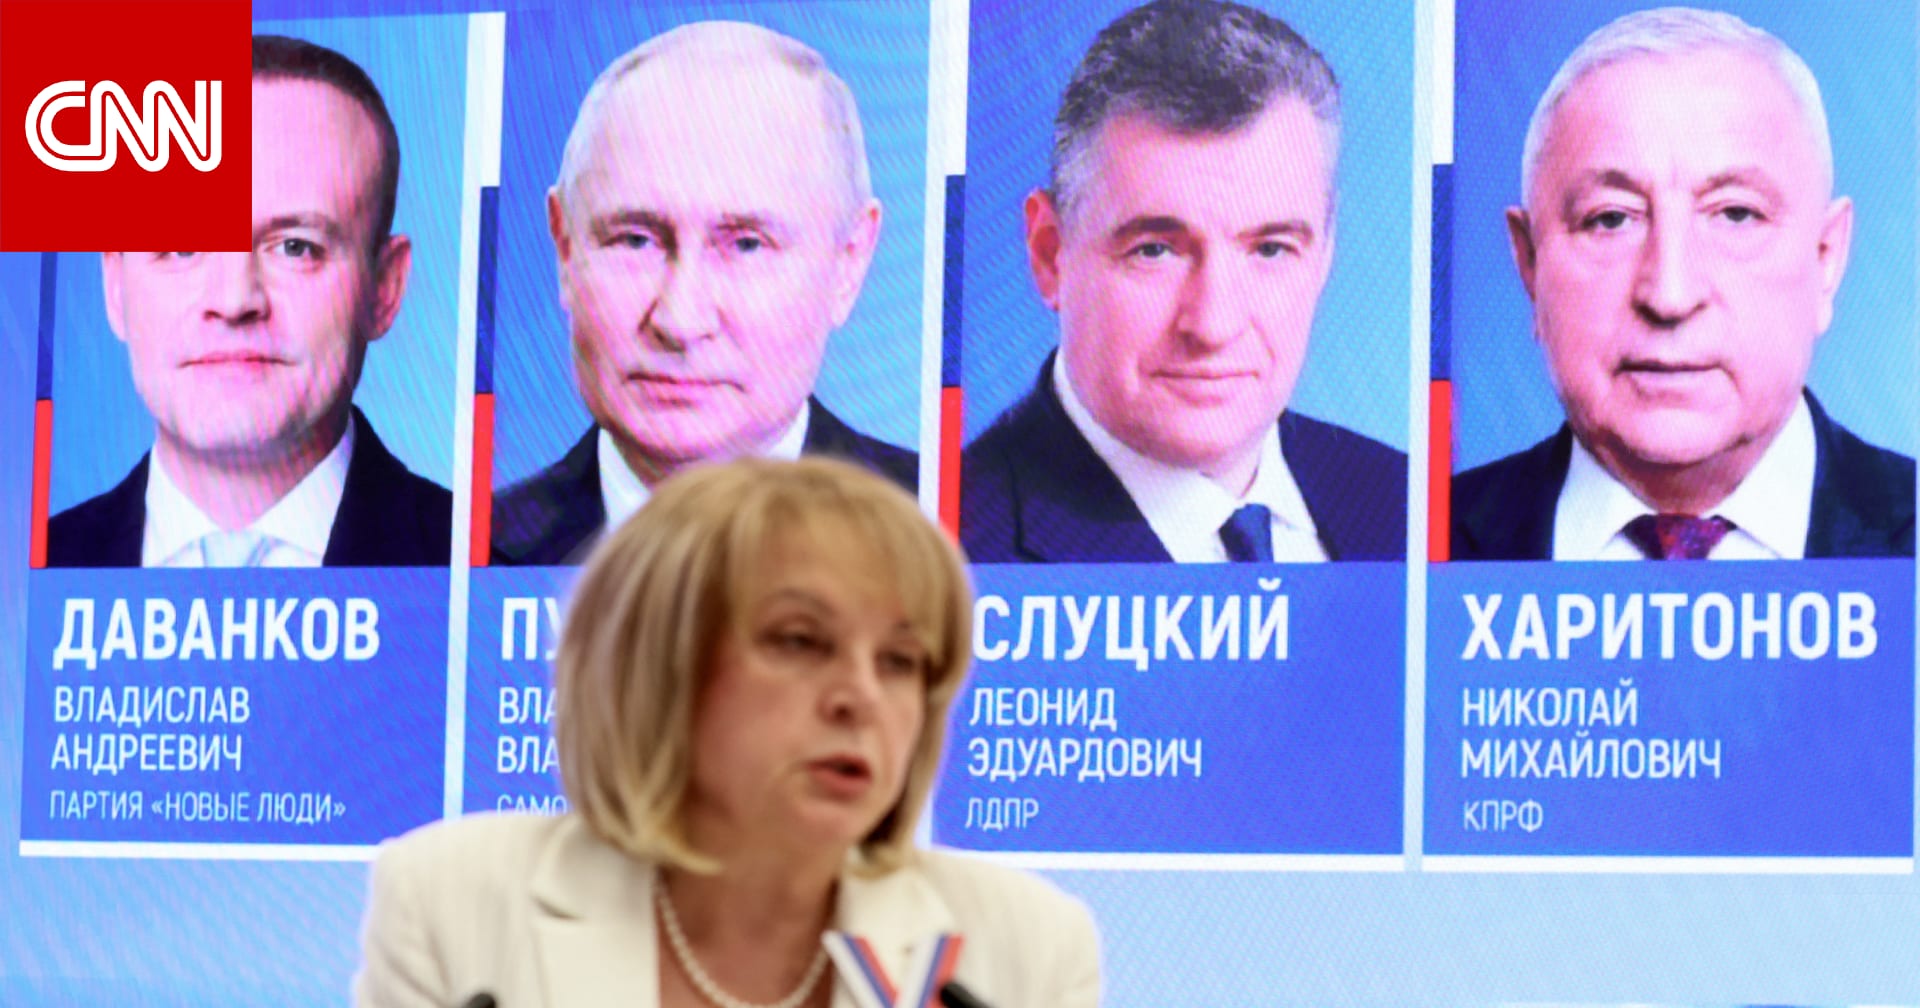 بوتين يتجه نحو ولاية أخرى في السلطة.. إليك ما تحتاج معرفته عن الانتخابات الرئاسية في روسيا